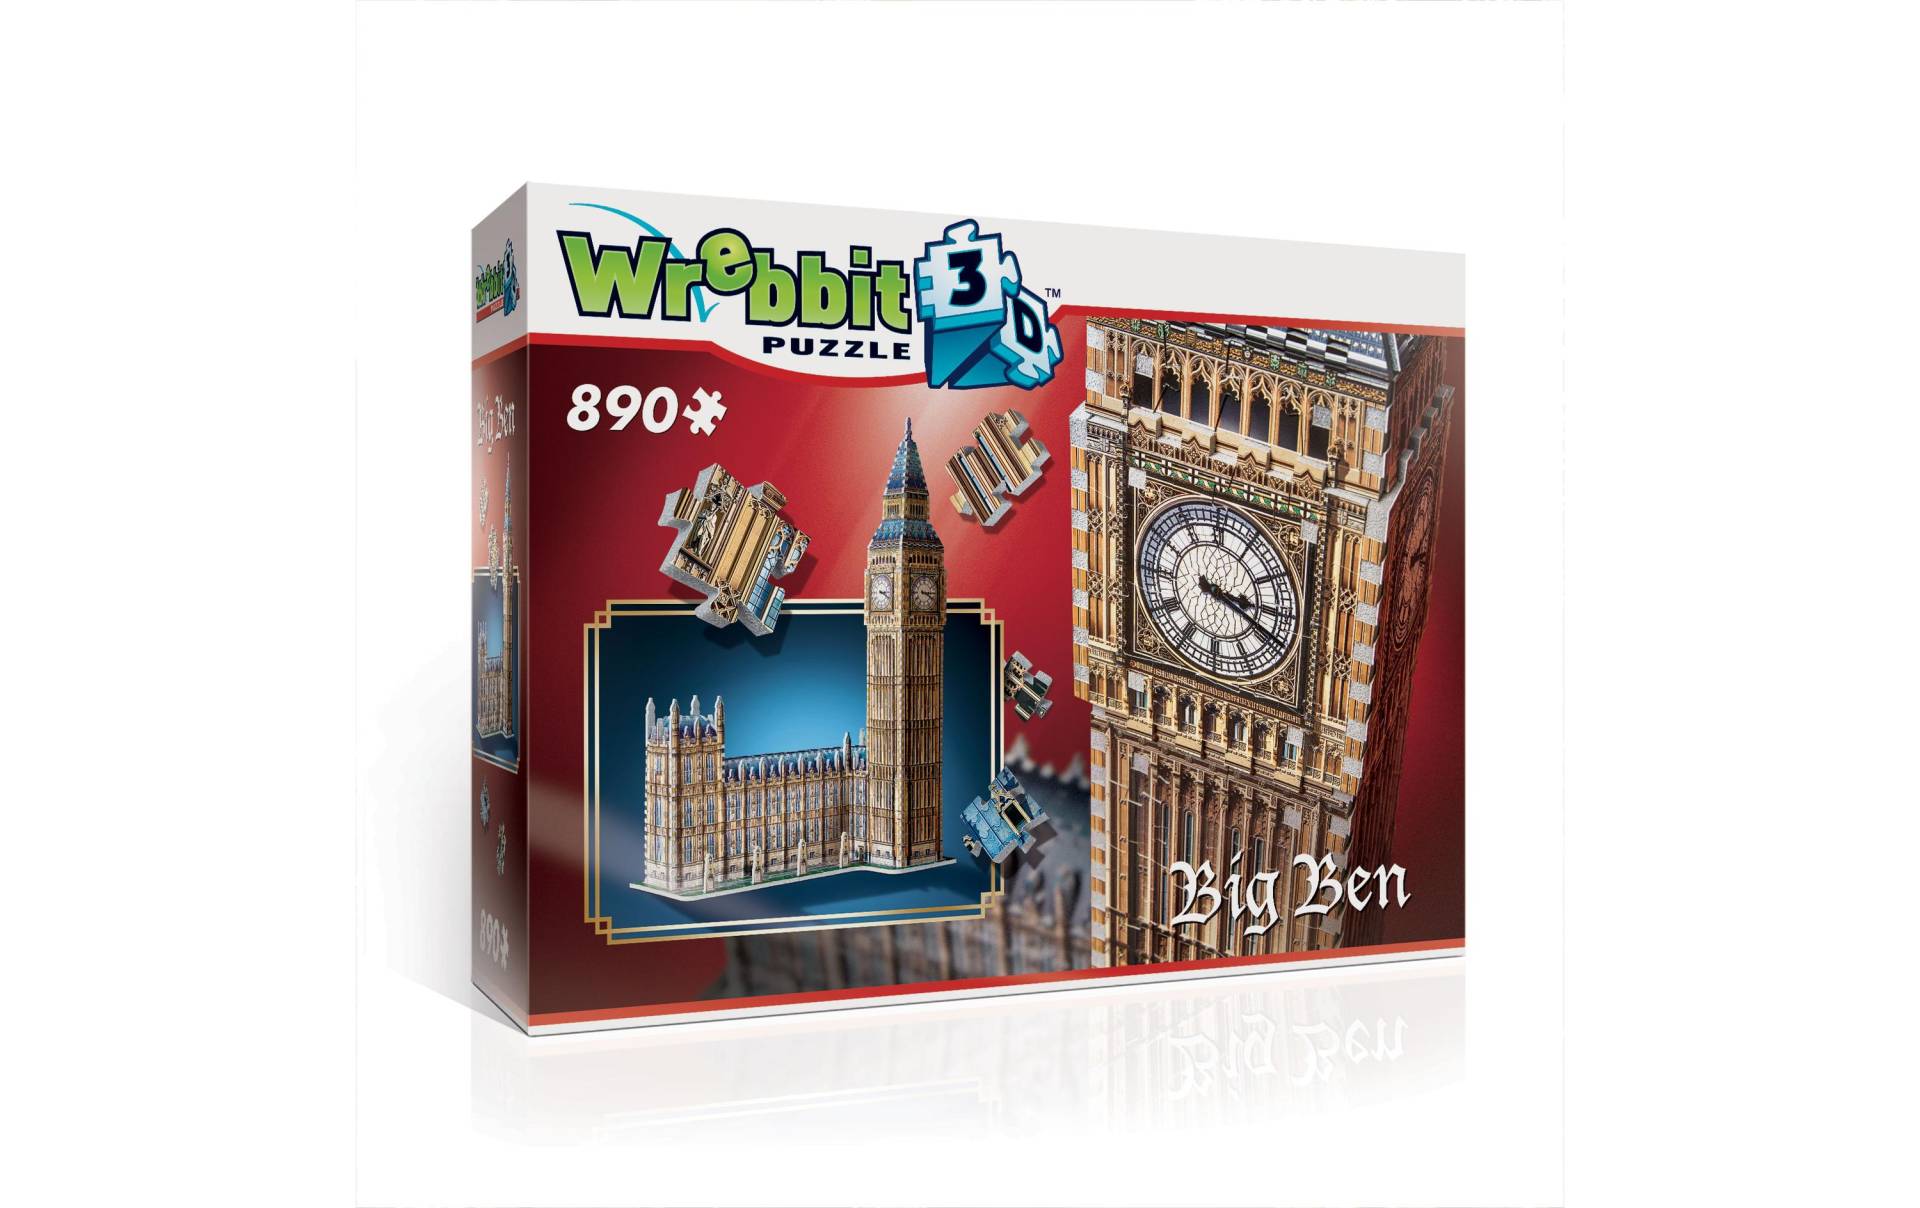 Wrebbit 3D-Puzzle »Big Ben«, (890 tlg.) von Wrebbit